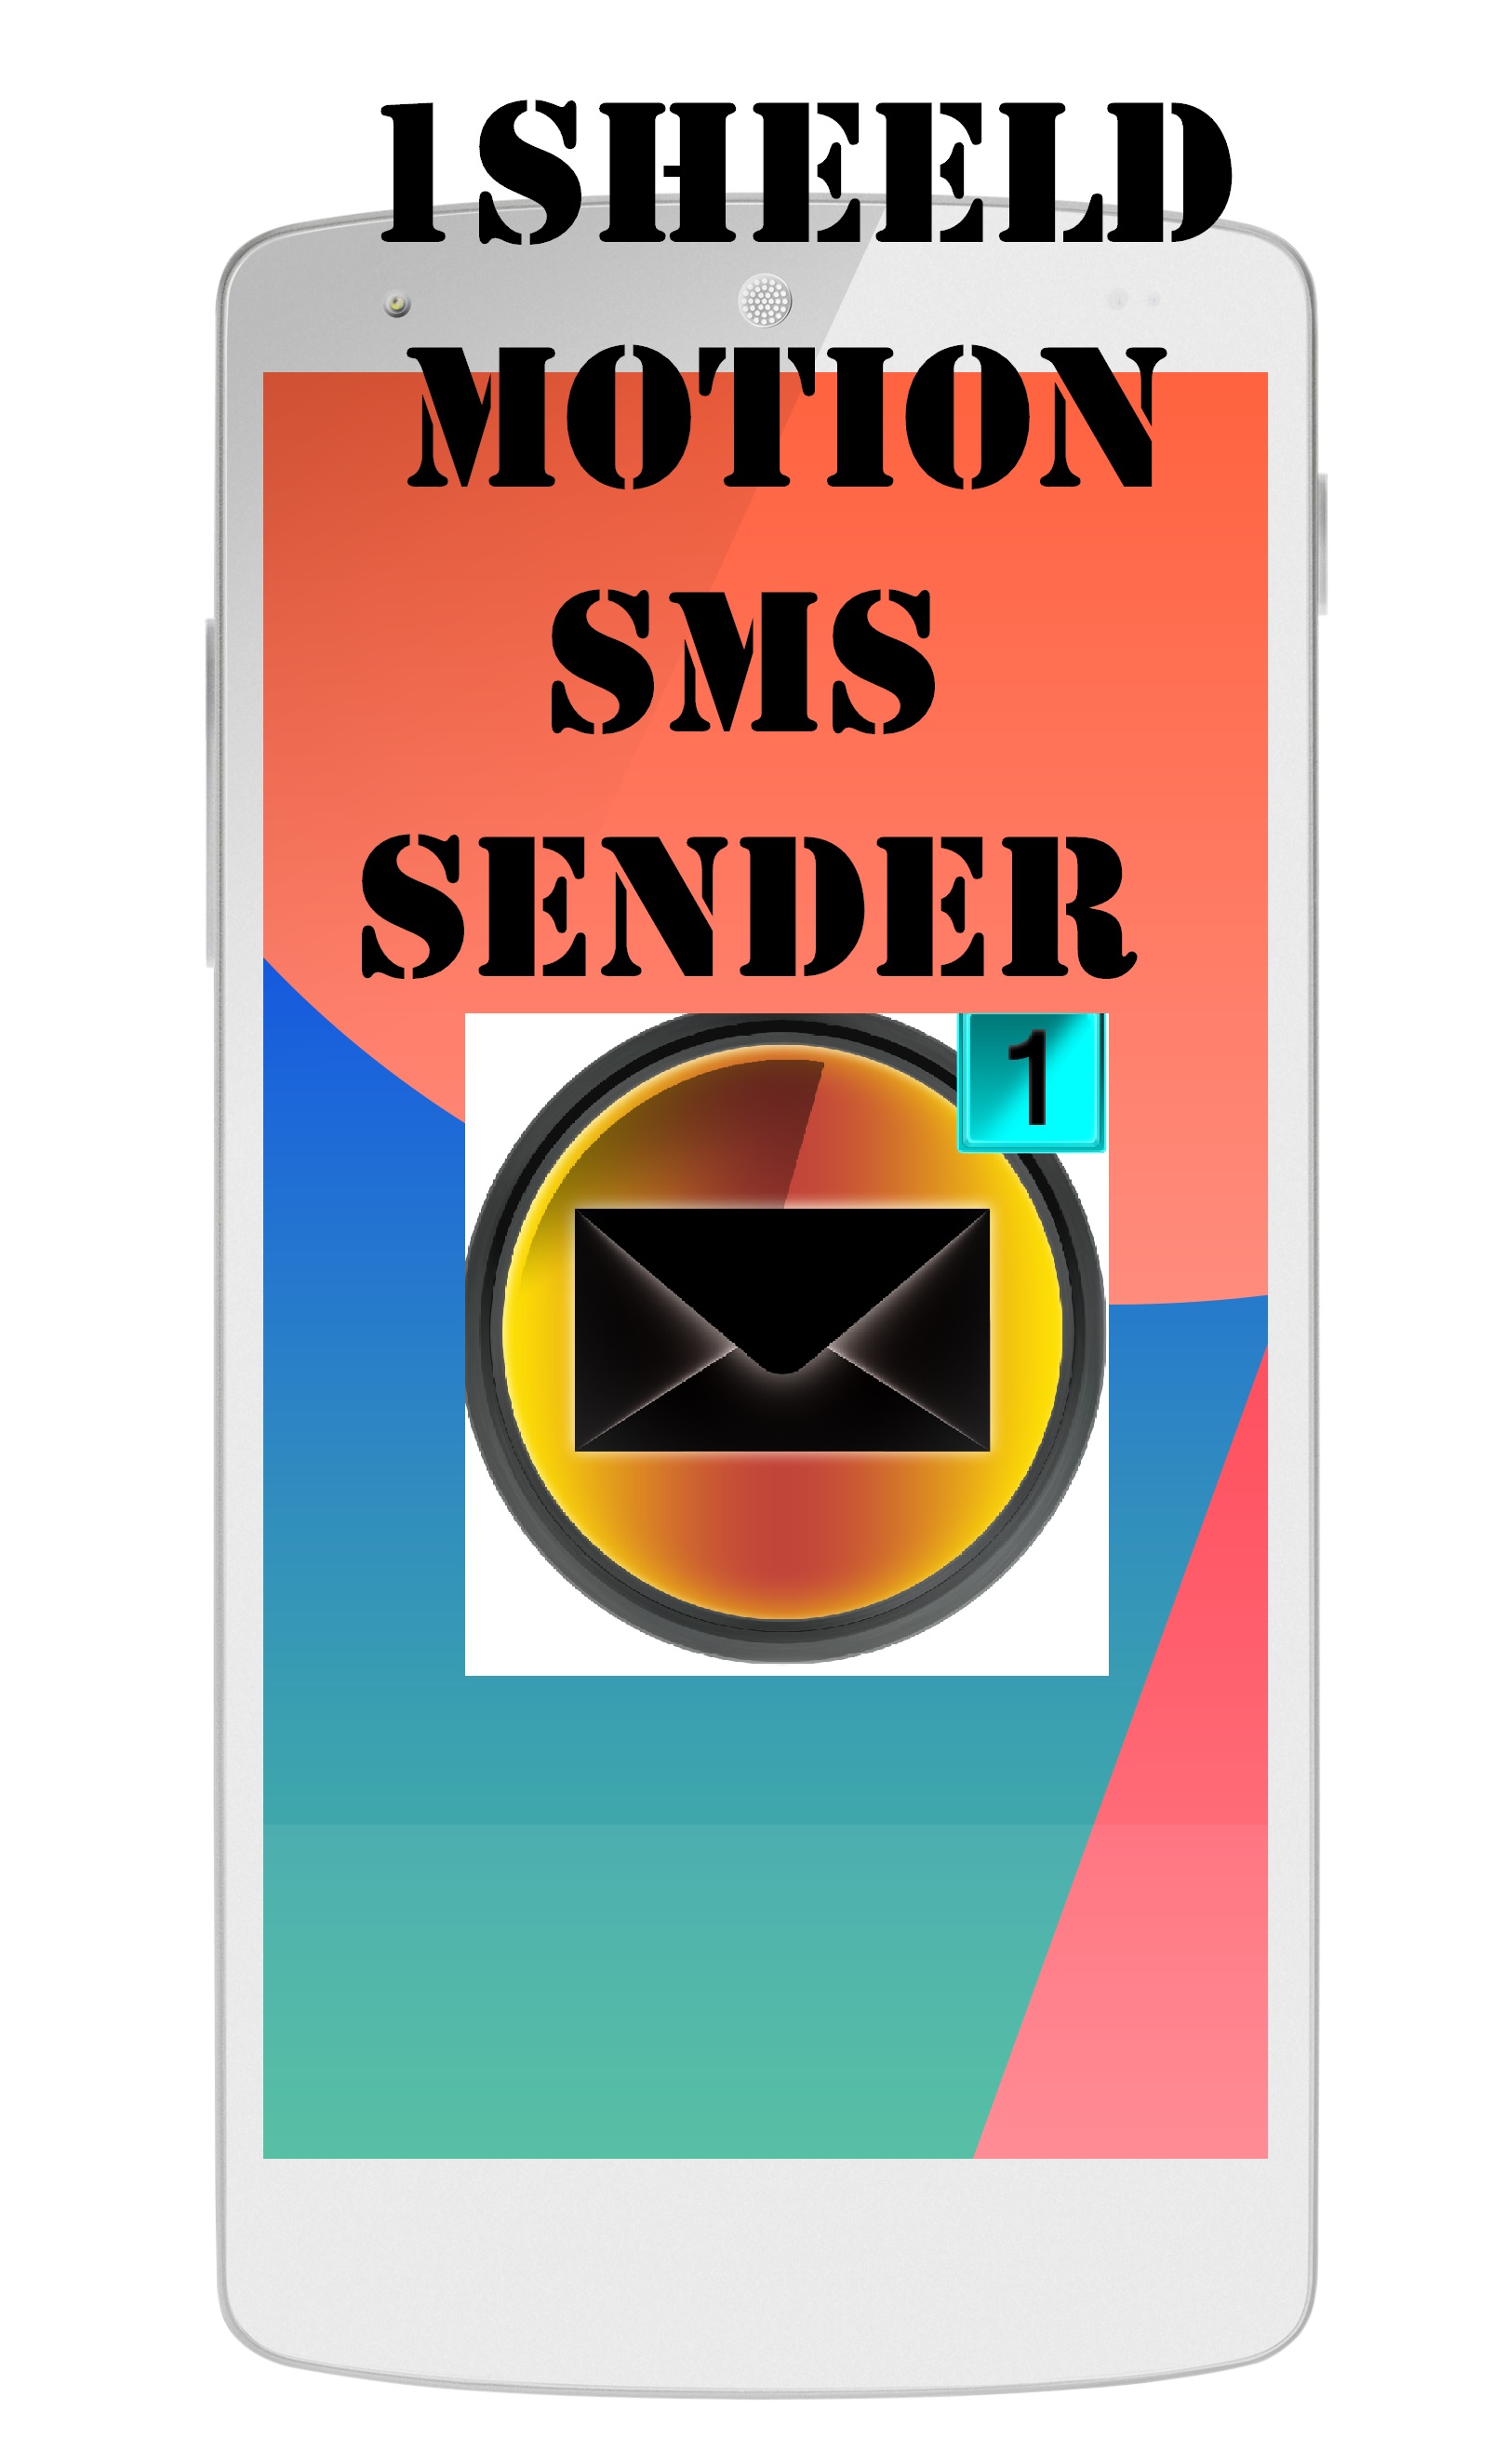 hush sms sender apk download